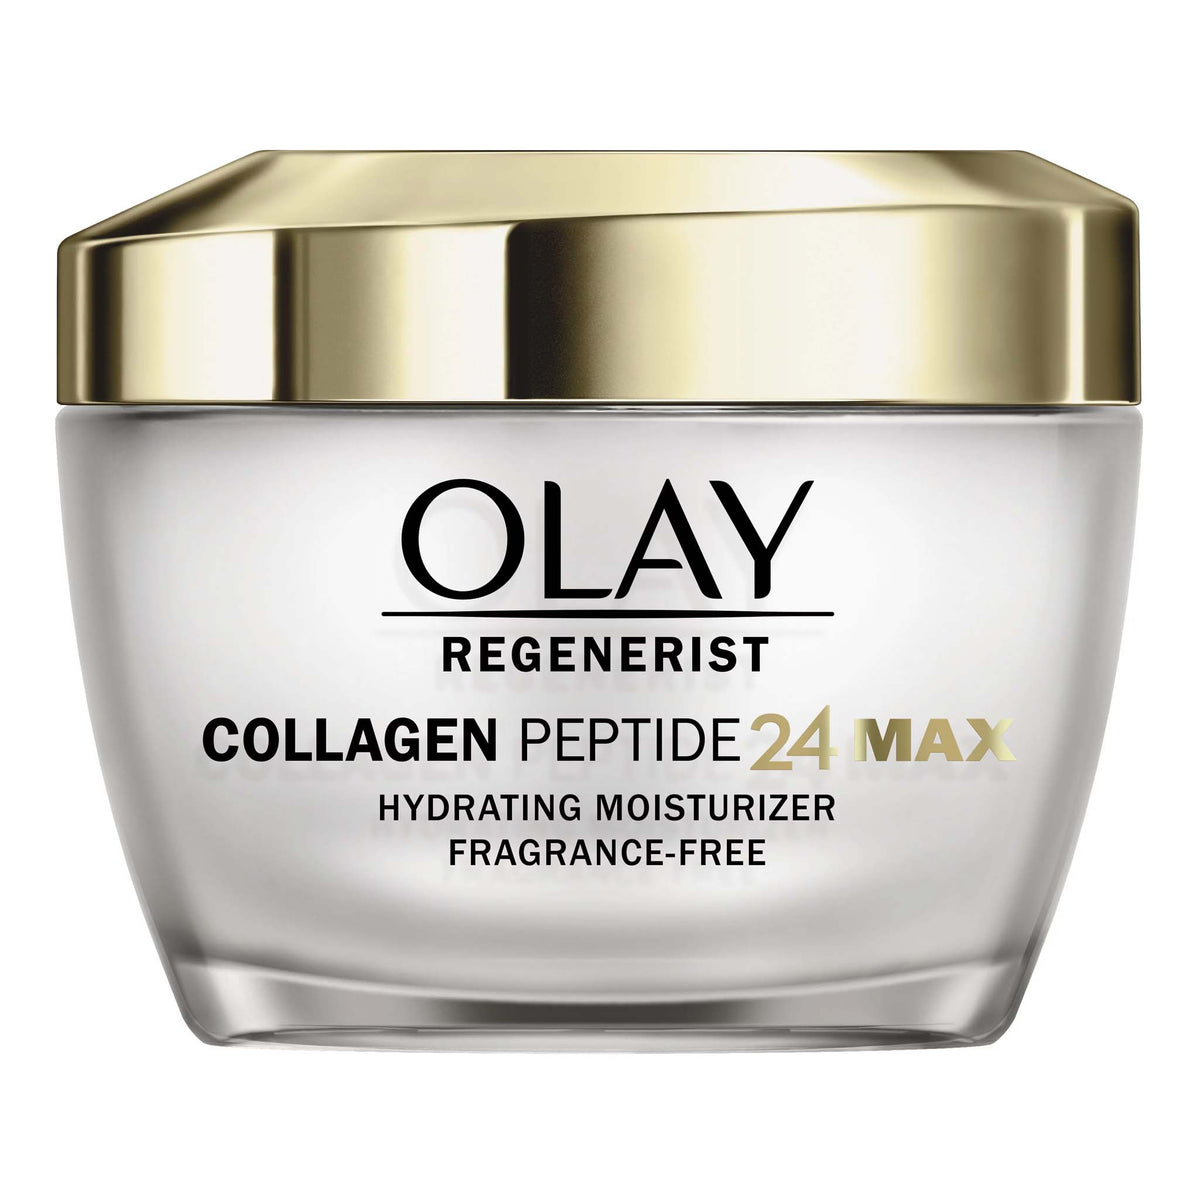 Giá bán và cách sử dụng sản phẩm Olay Collagen Peptide 24 Max là gì?